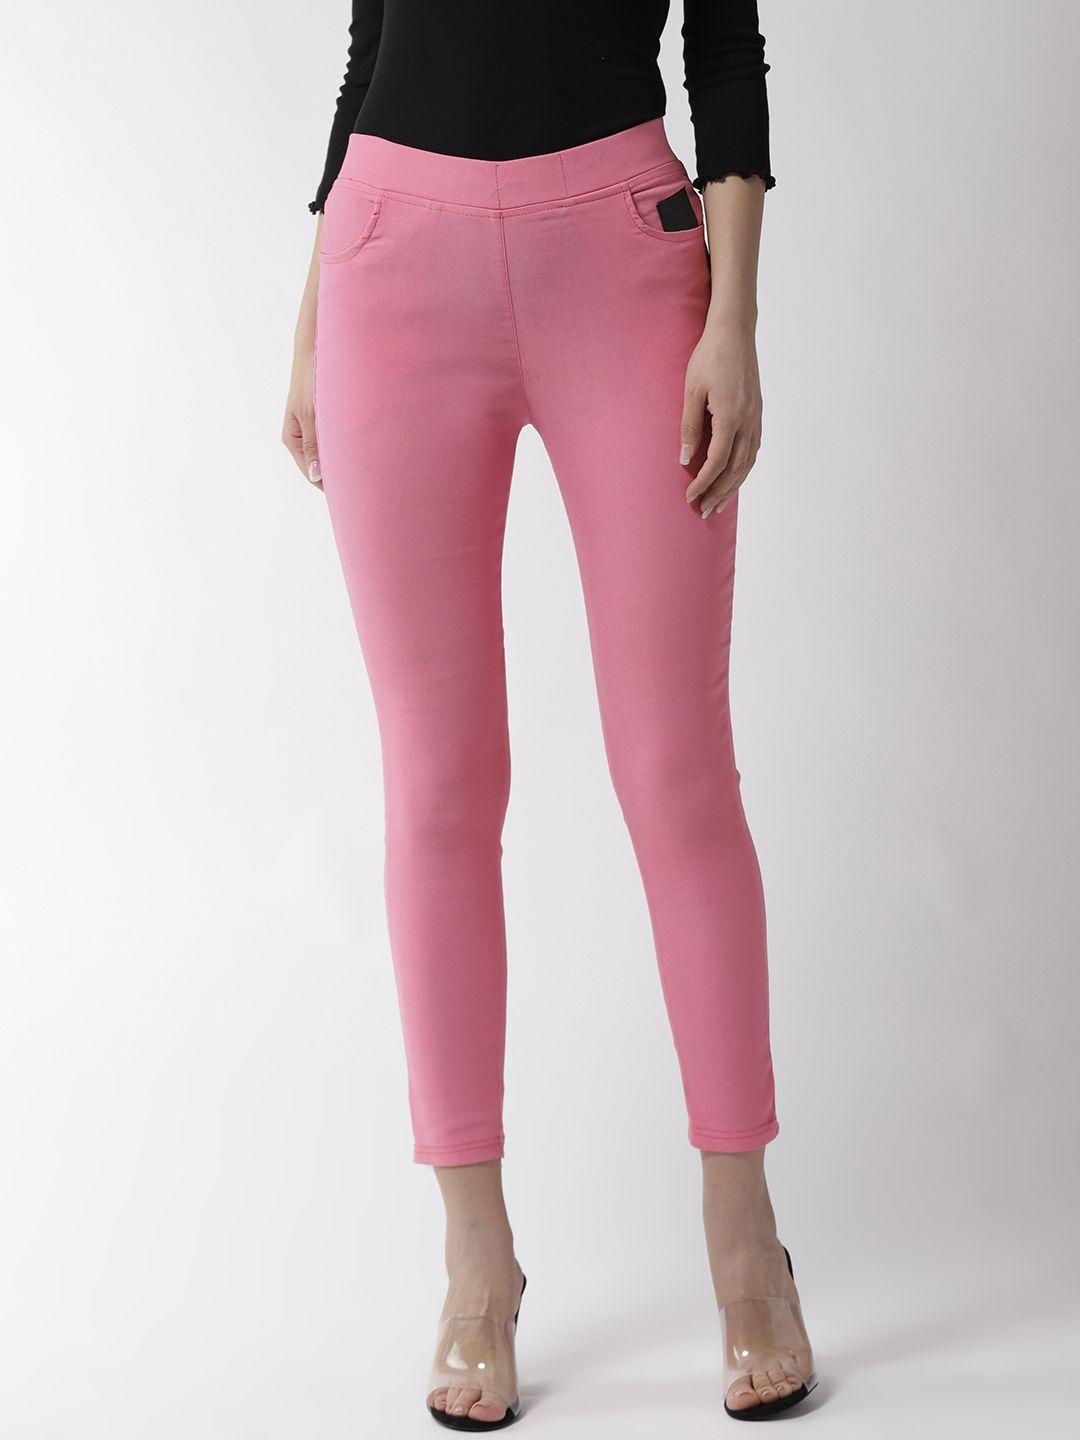 la zoire women pink solid slim fit cropped jeggings